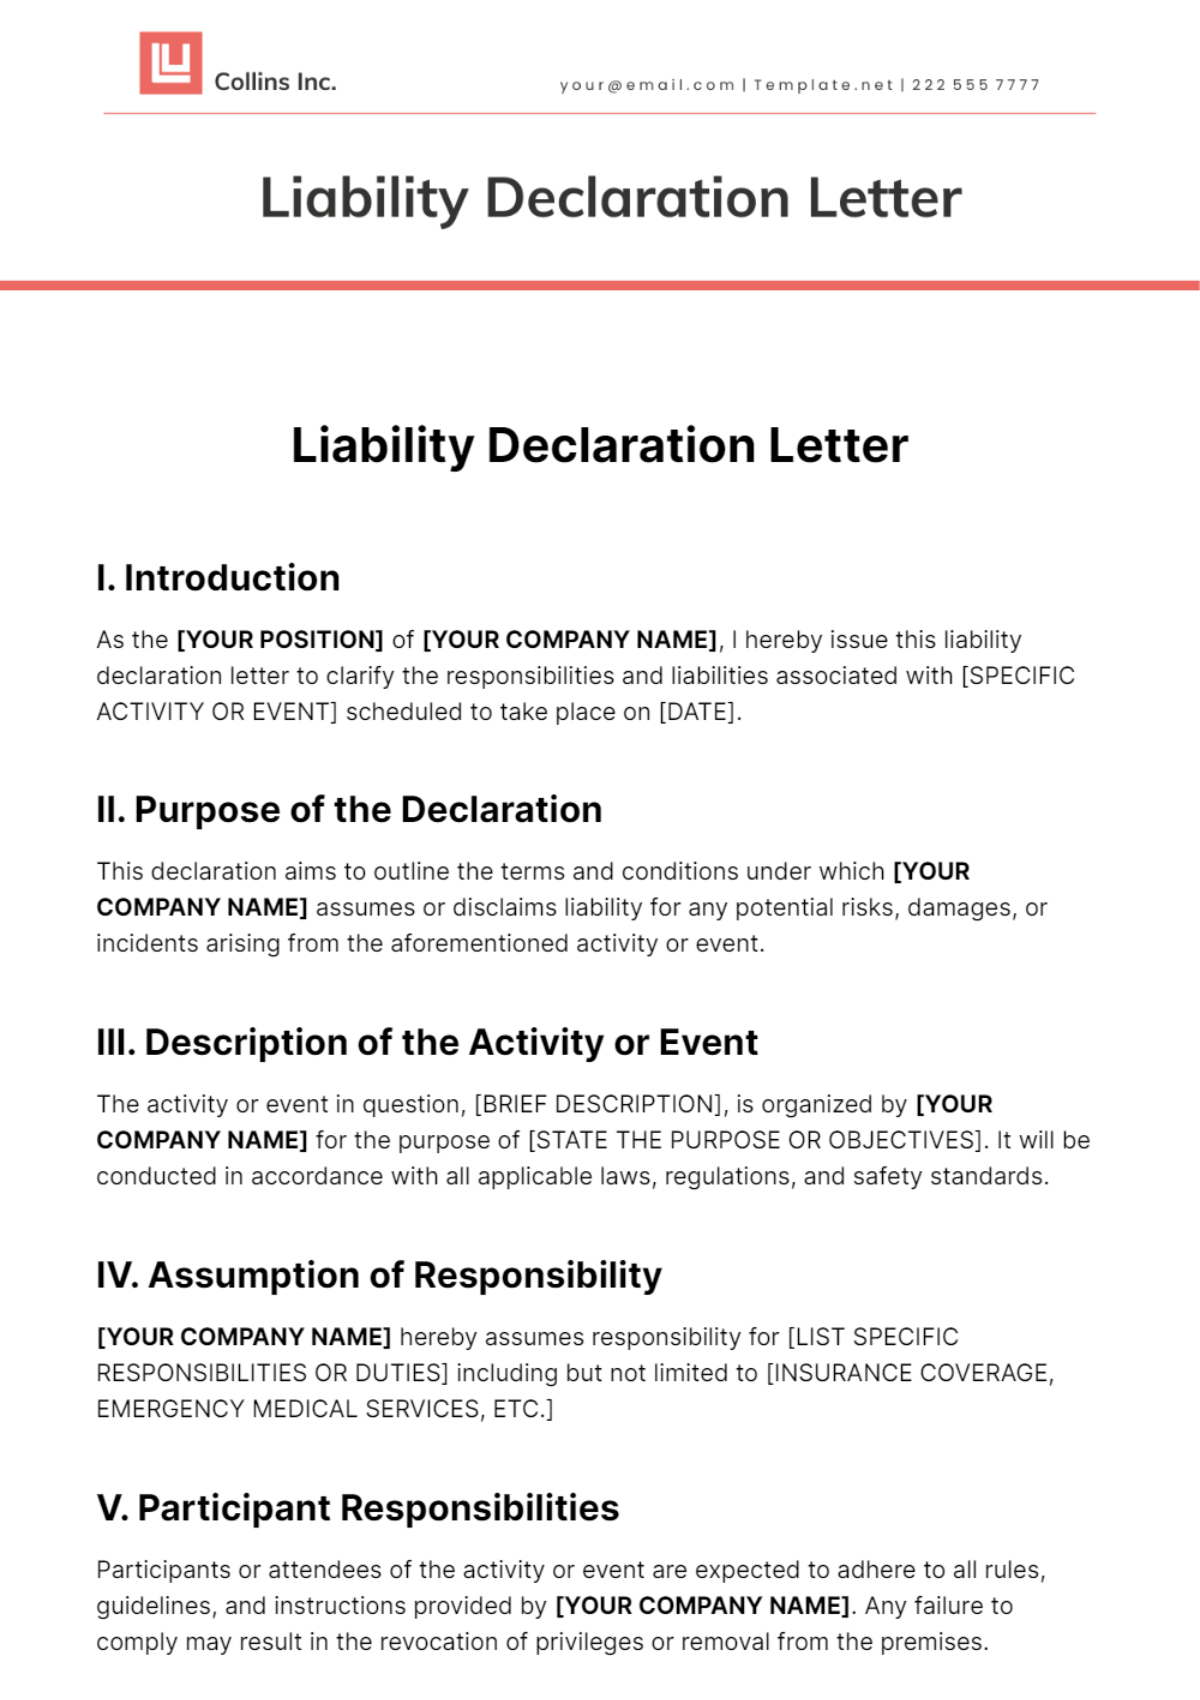 Liability Declaration Letter Template